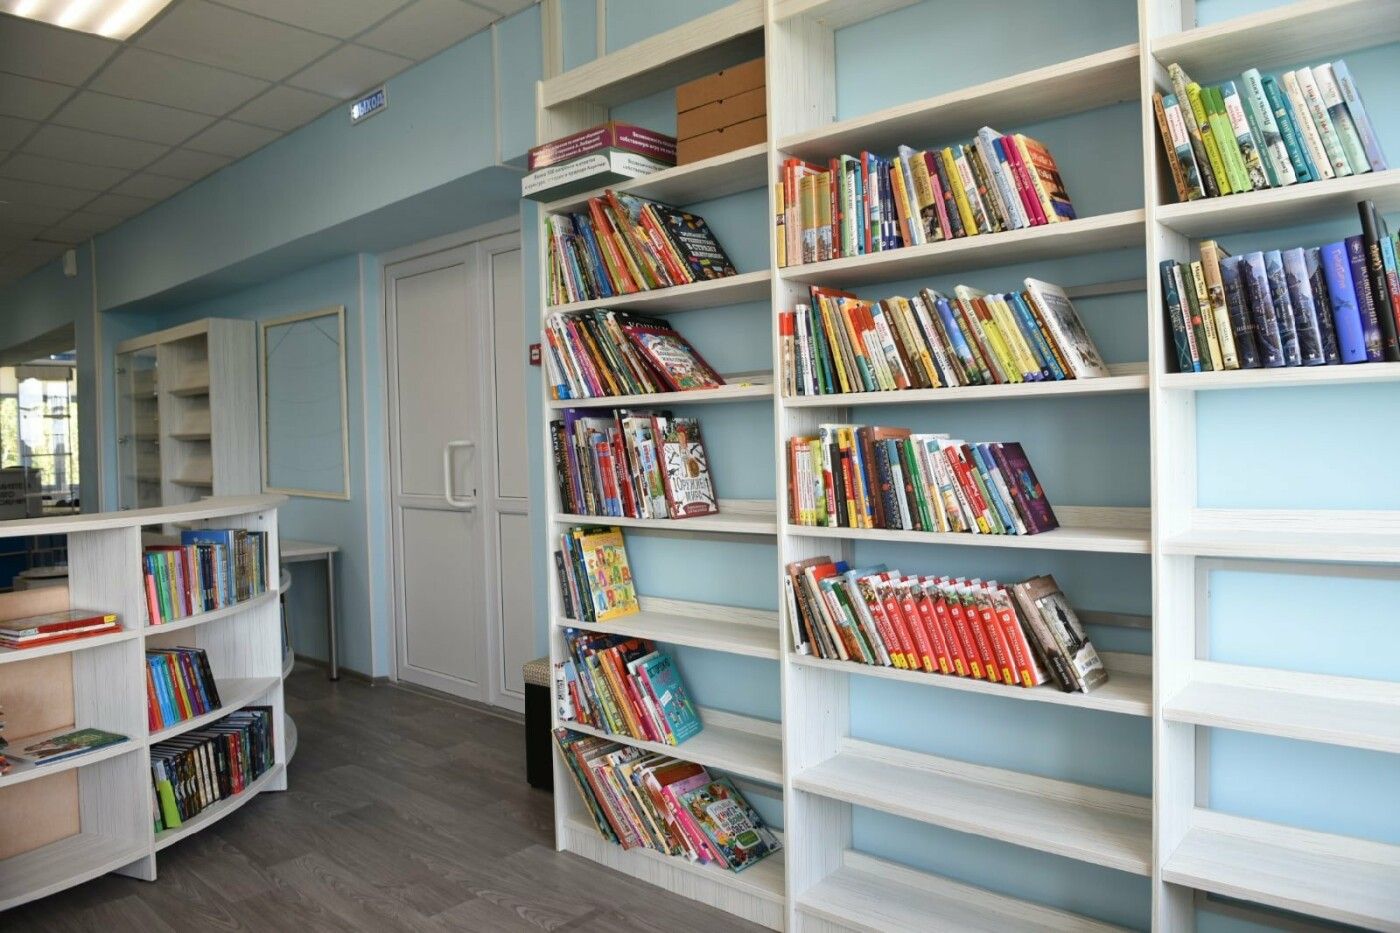 Новая модельная библиотека откроется в Олонецком районе